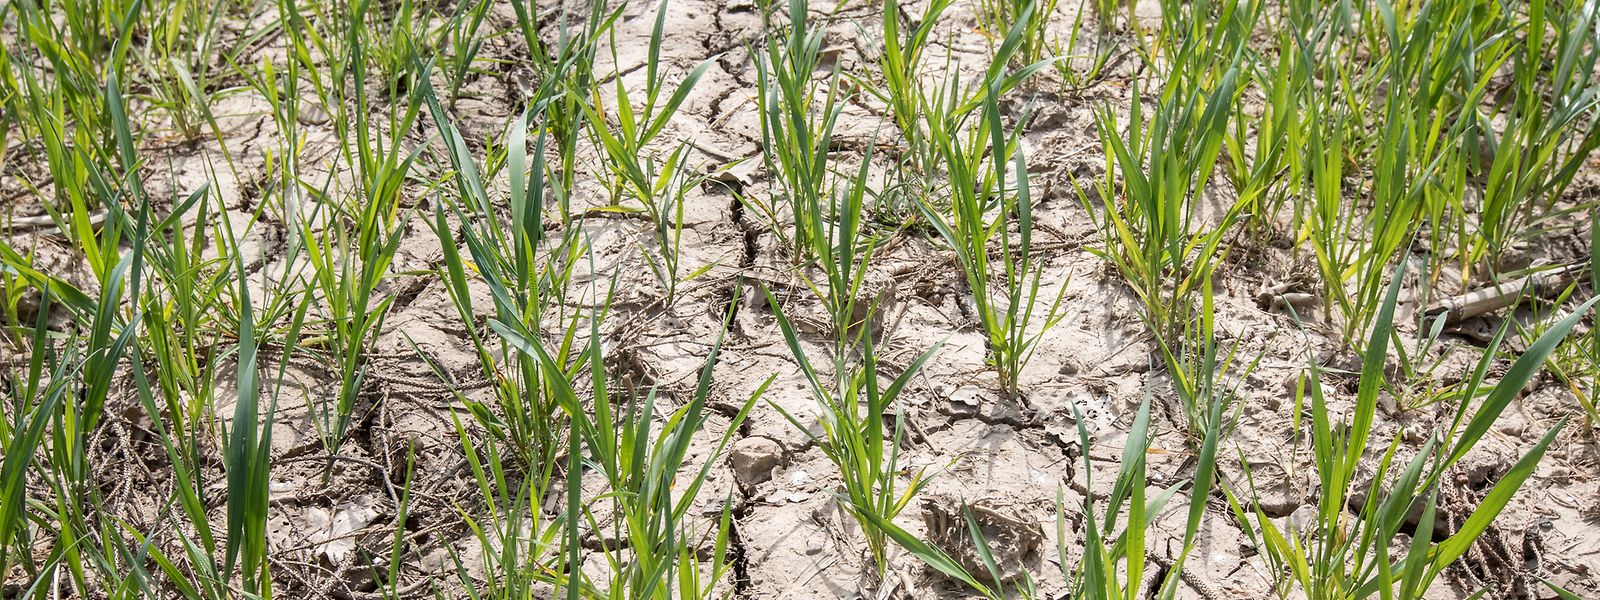 Auf den Getreidefeldern zeigen sich mittlerweile in den erst zugeschwemmten, dann ausgetrockneten Böden tiefe Risse.